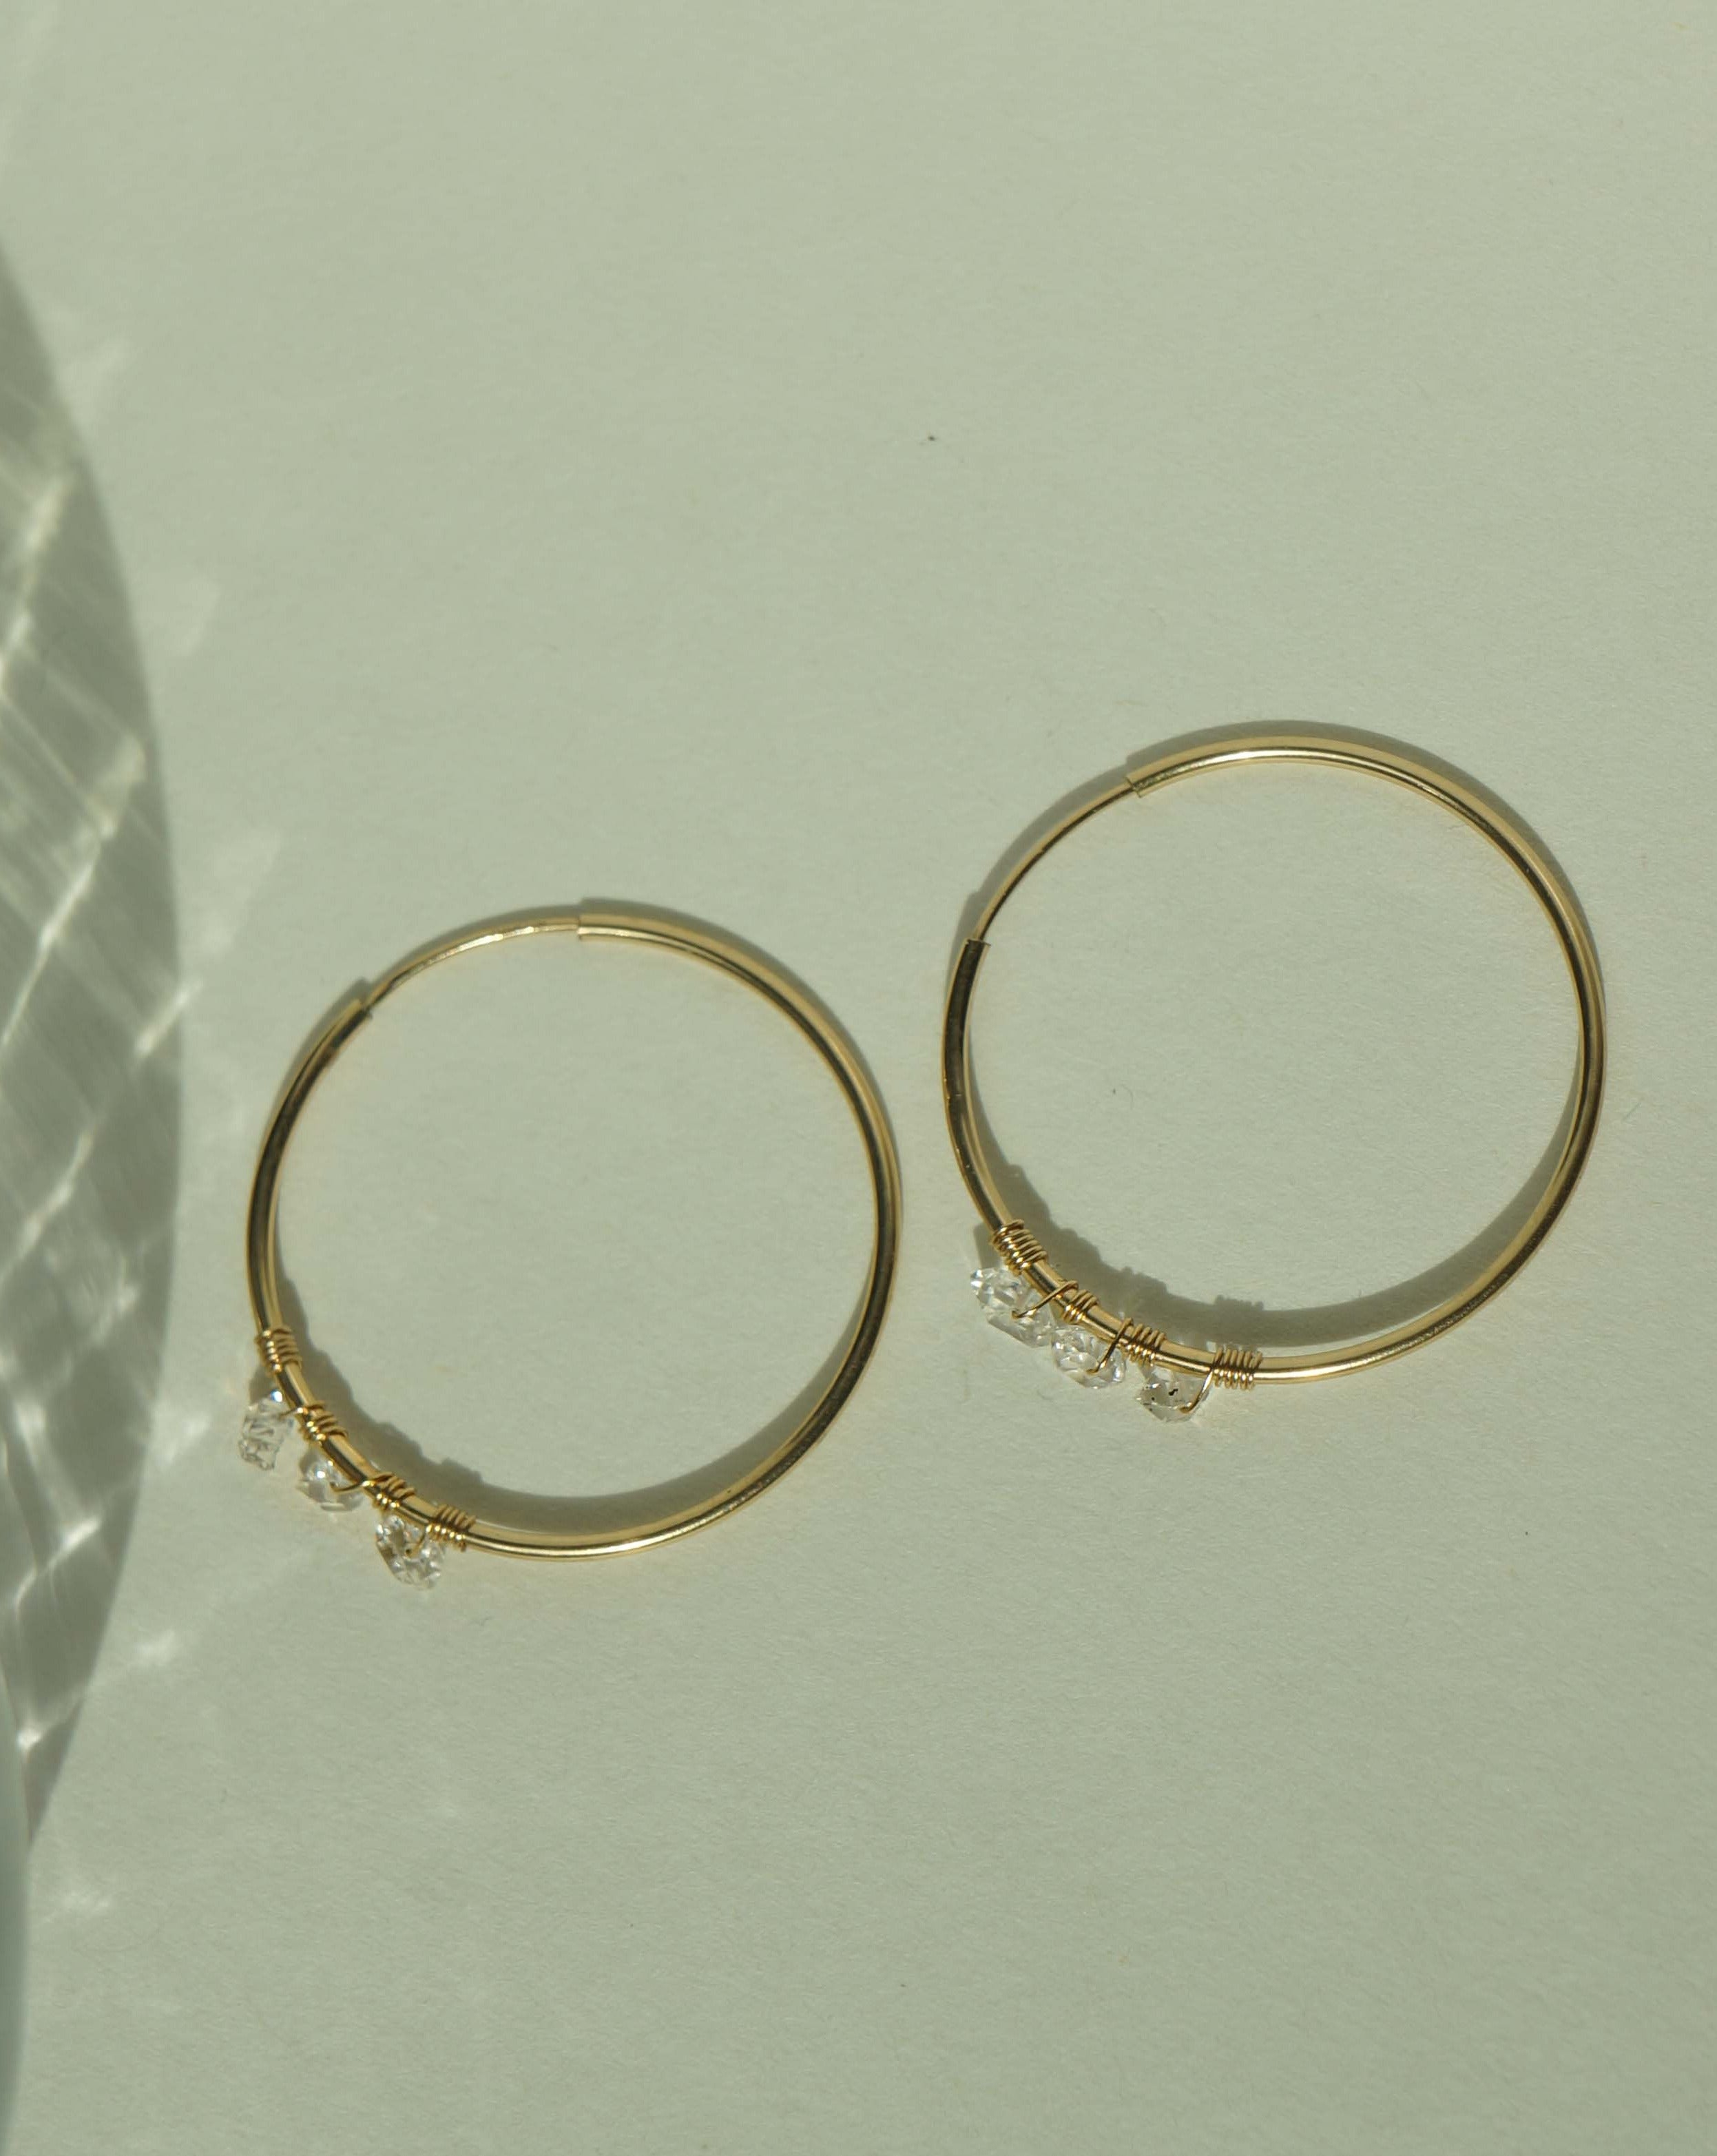 Selena Herkimer Hoop Earrings by KOZAKH. 30mm hoop earrings in 14K Gold Filled, featuring Herkimer Diamonds.